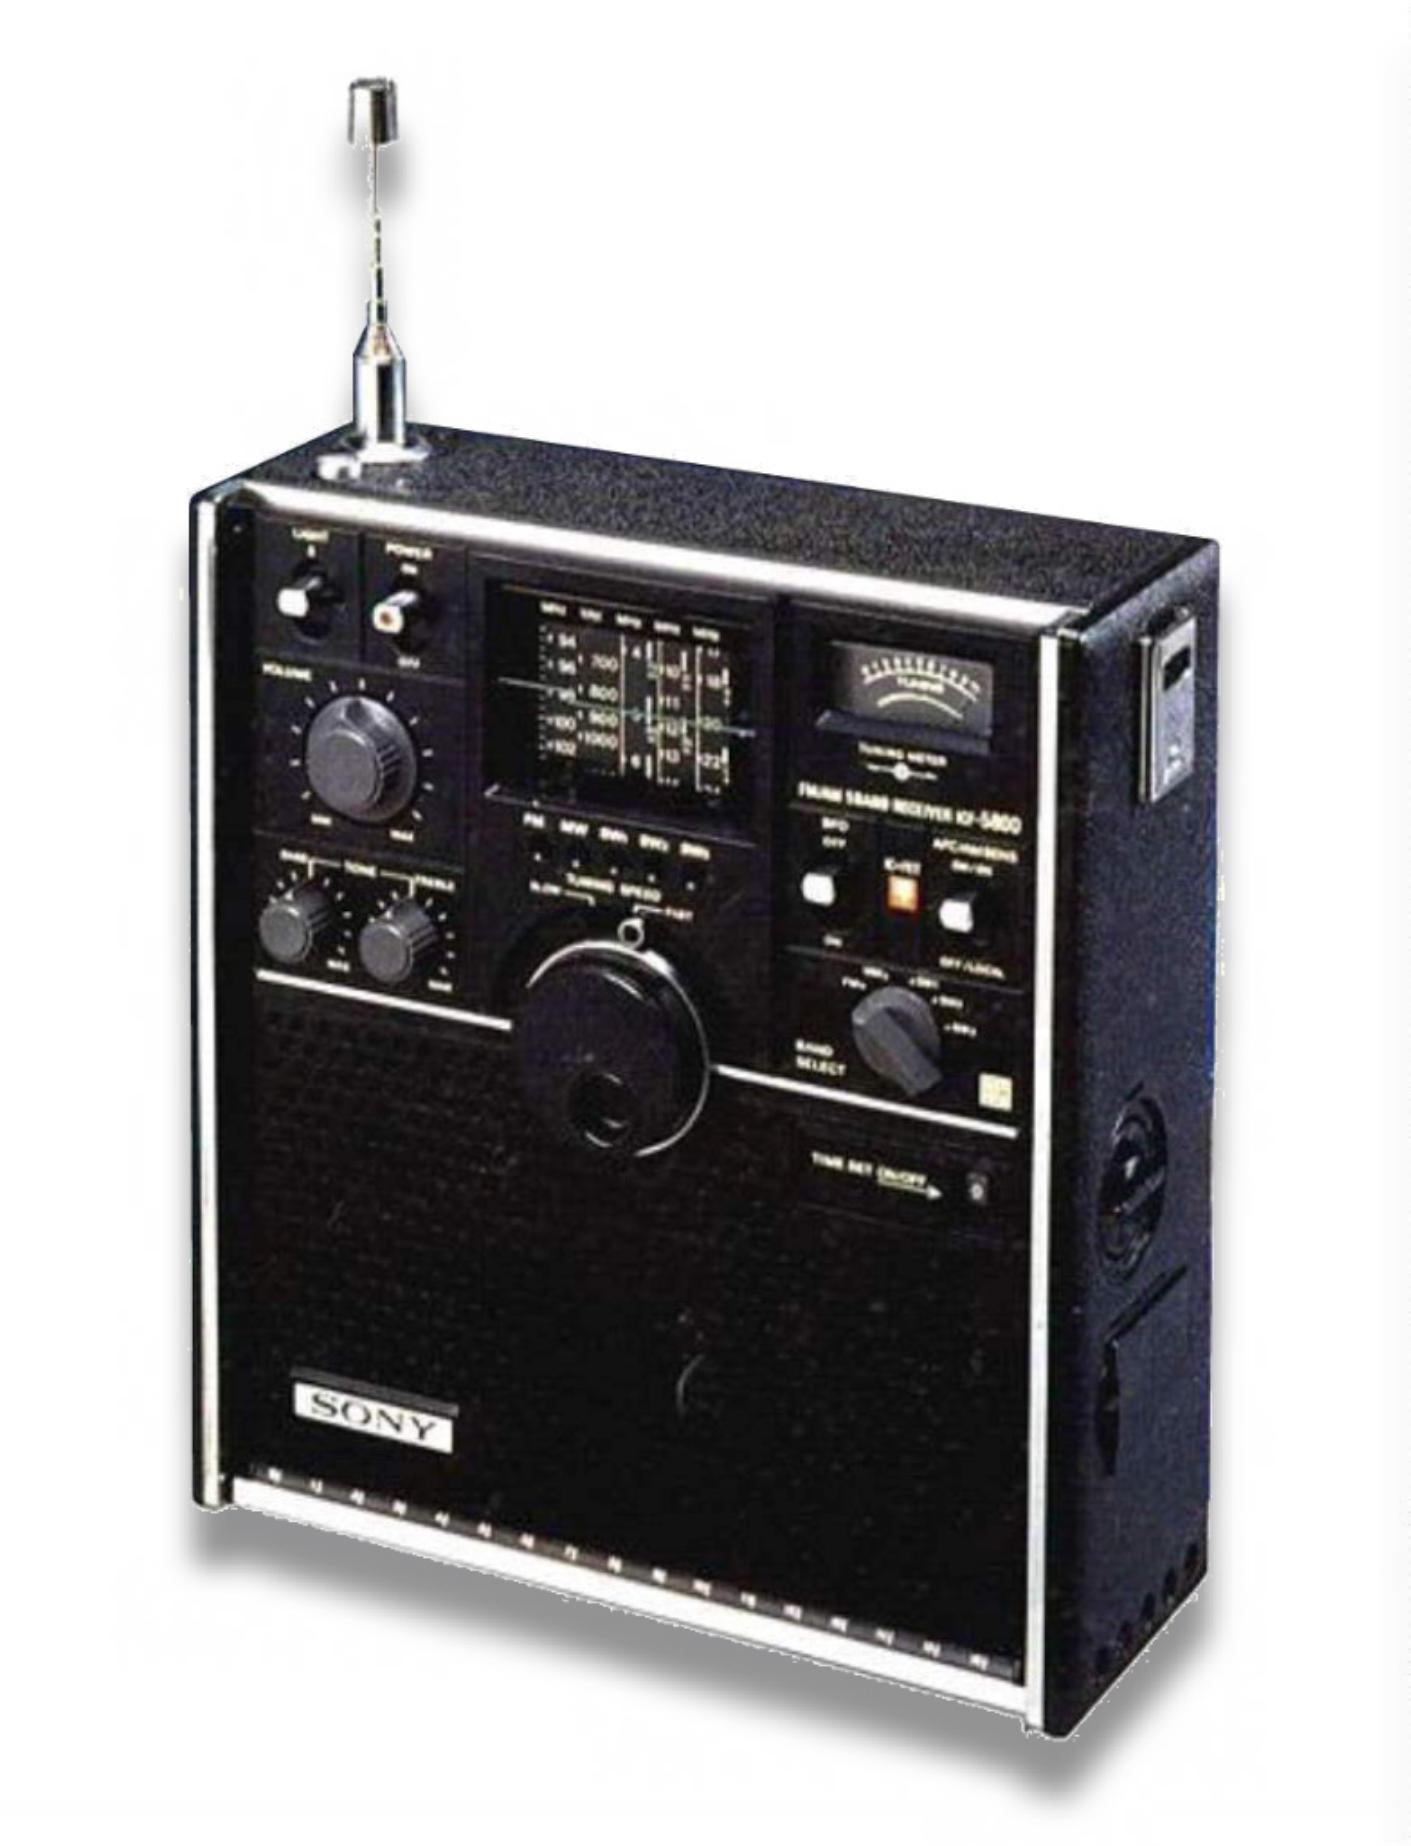 スカイセンサー5800(ICF-5800): BCLラジオネット